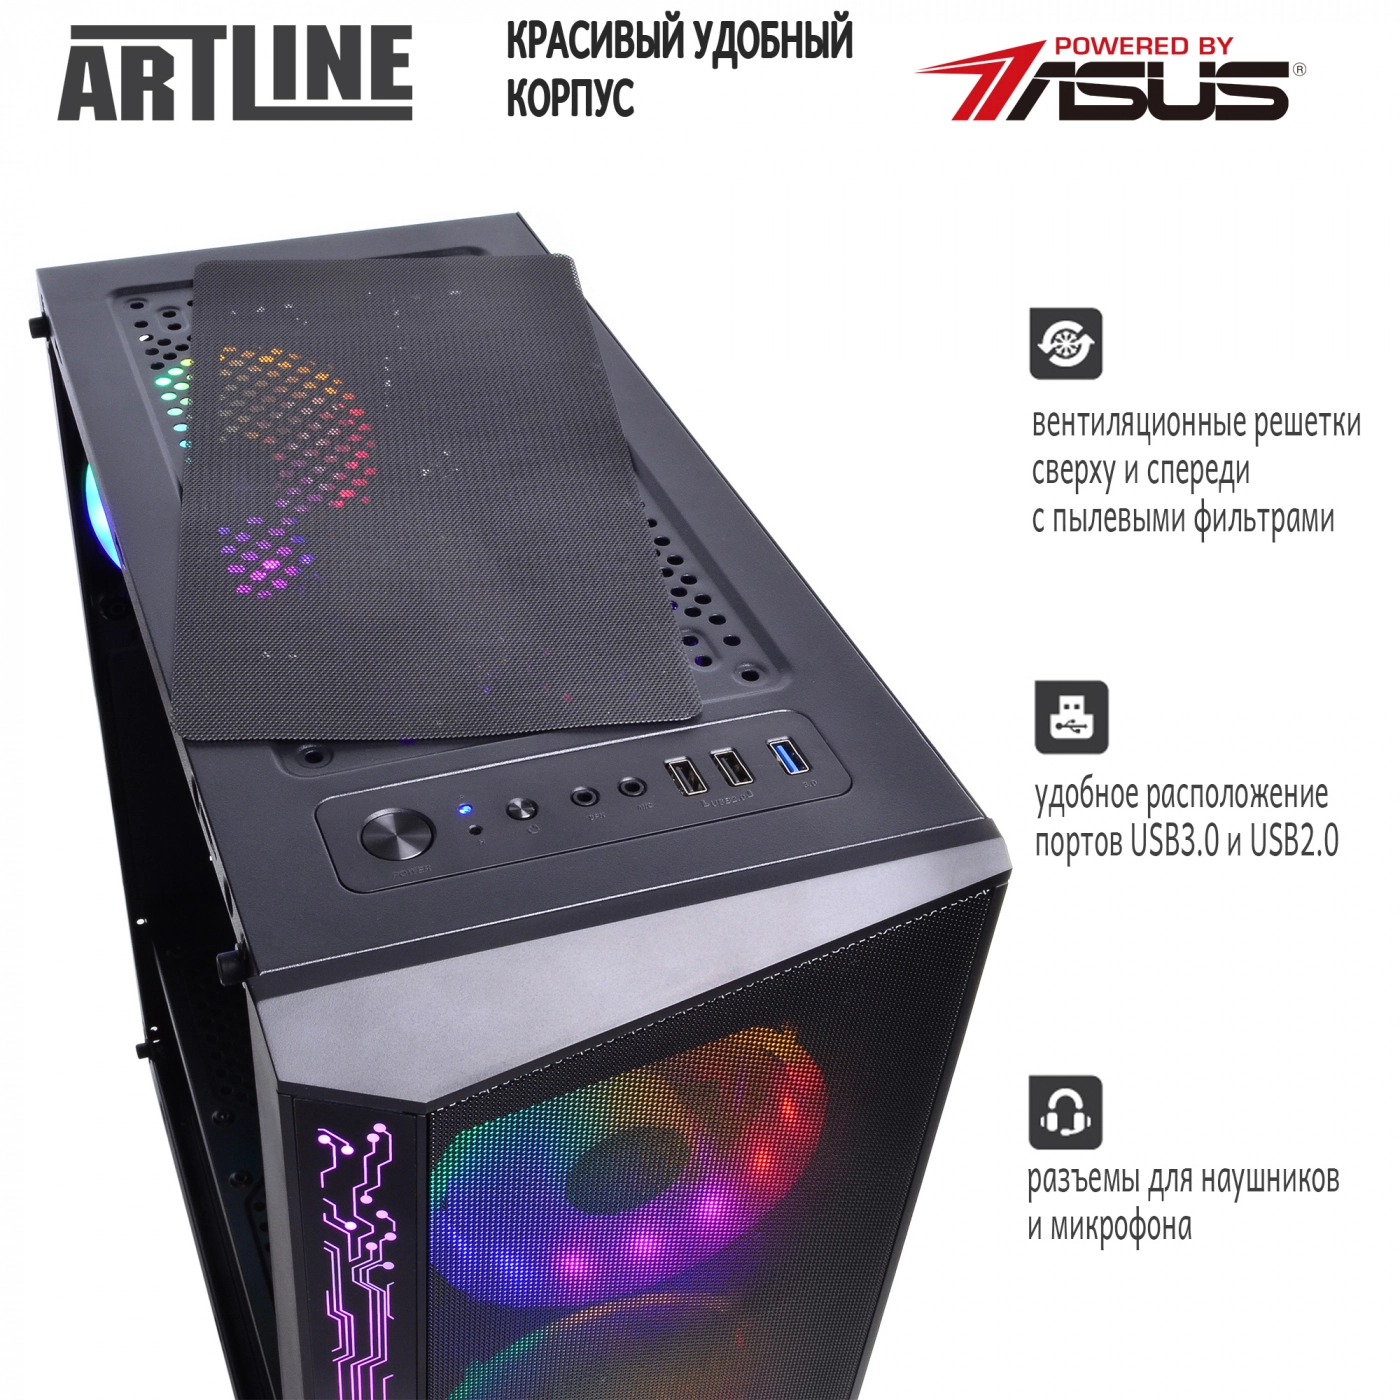 Купить Компьютер ARTLINE Gaming X64v07 - фото 4